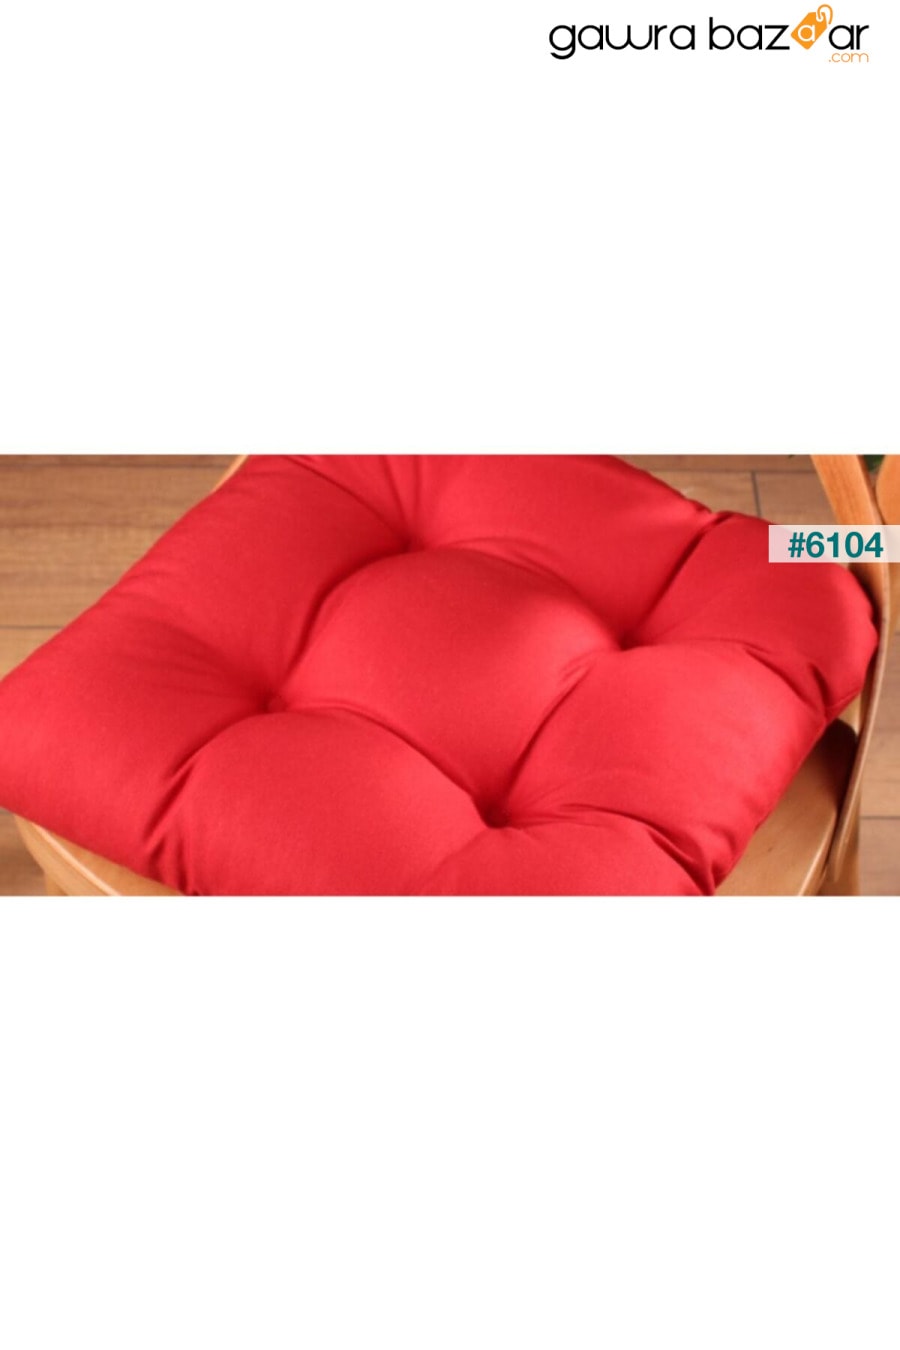 وسادة كرسي لوكس Pofidik باللون الأحمر الكلاريت بغرز خاصة 40x40 سم ALTINPAMUK 3